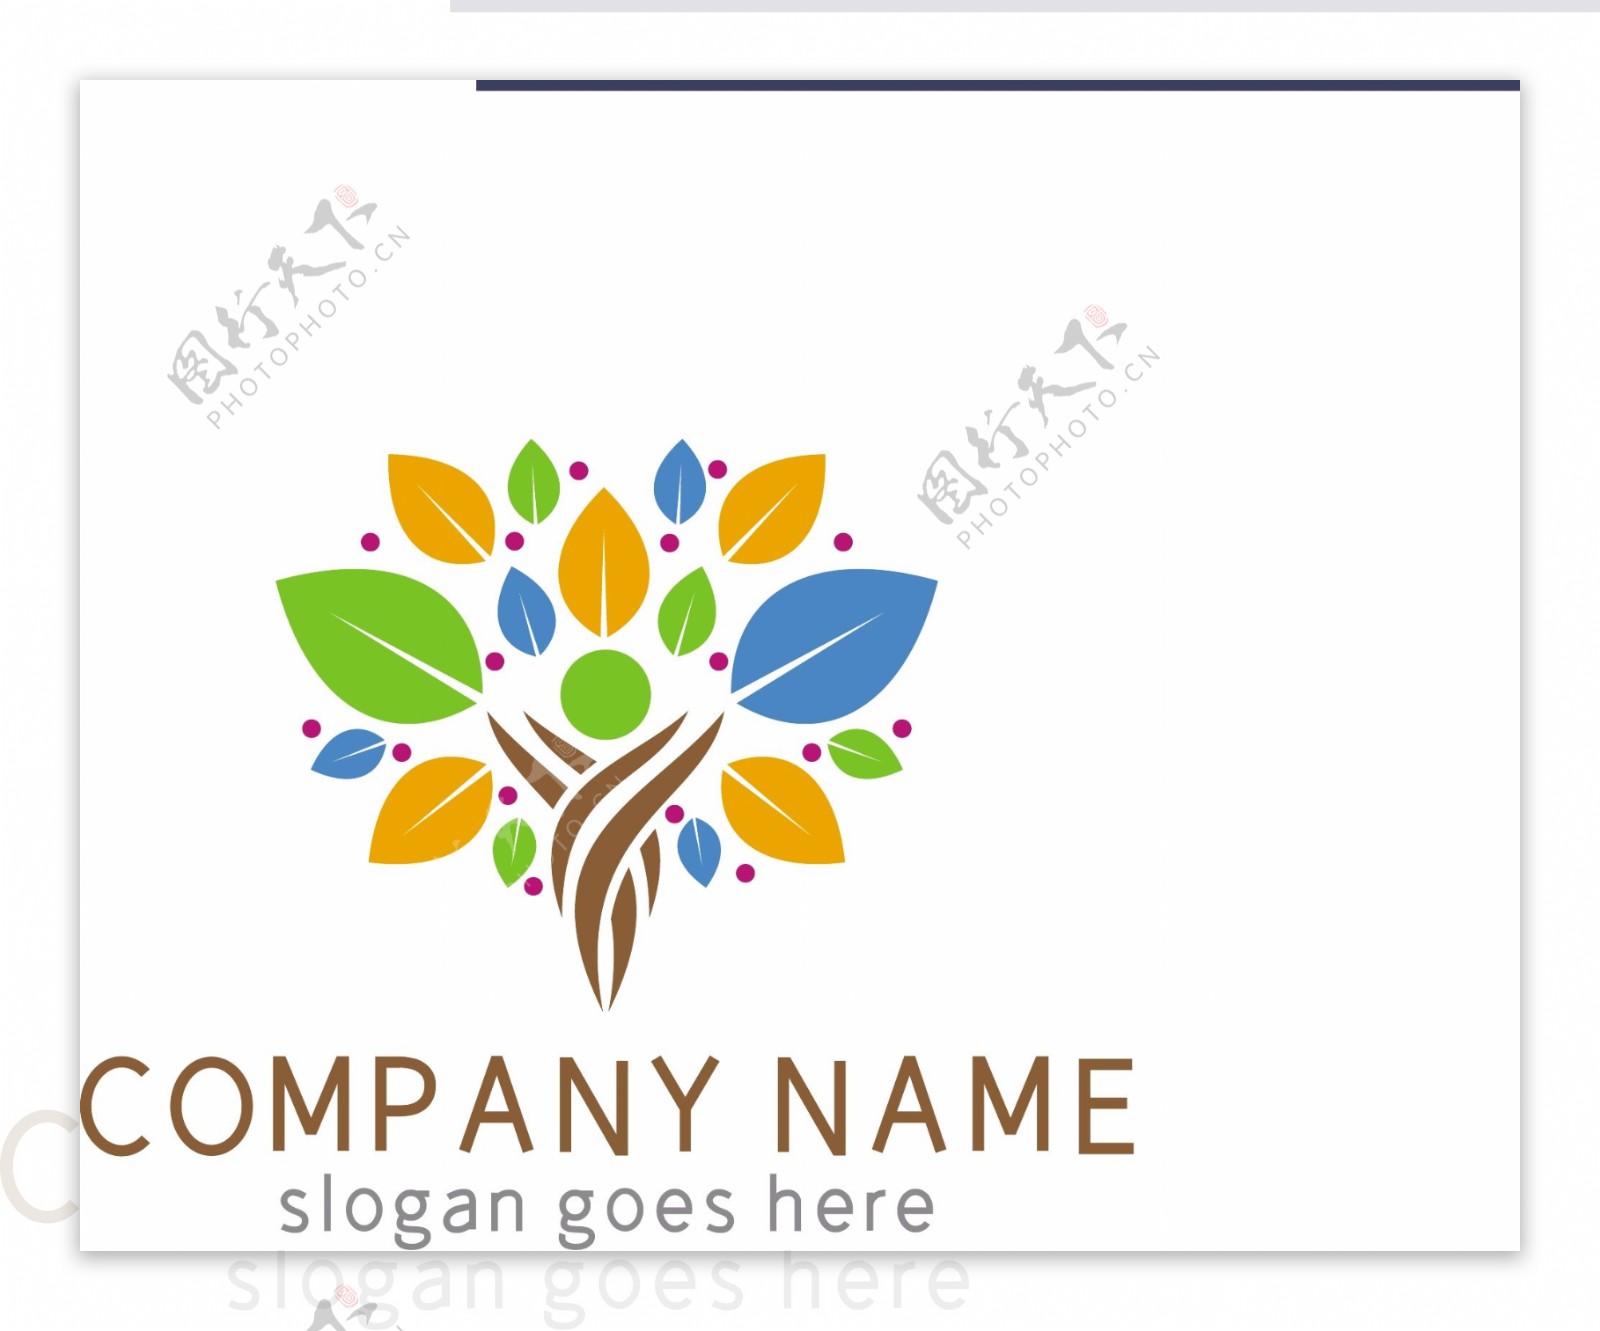 时尚创意彩色树木树叶广告传媒logo